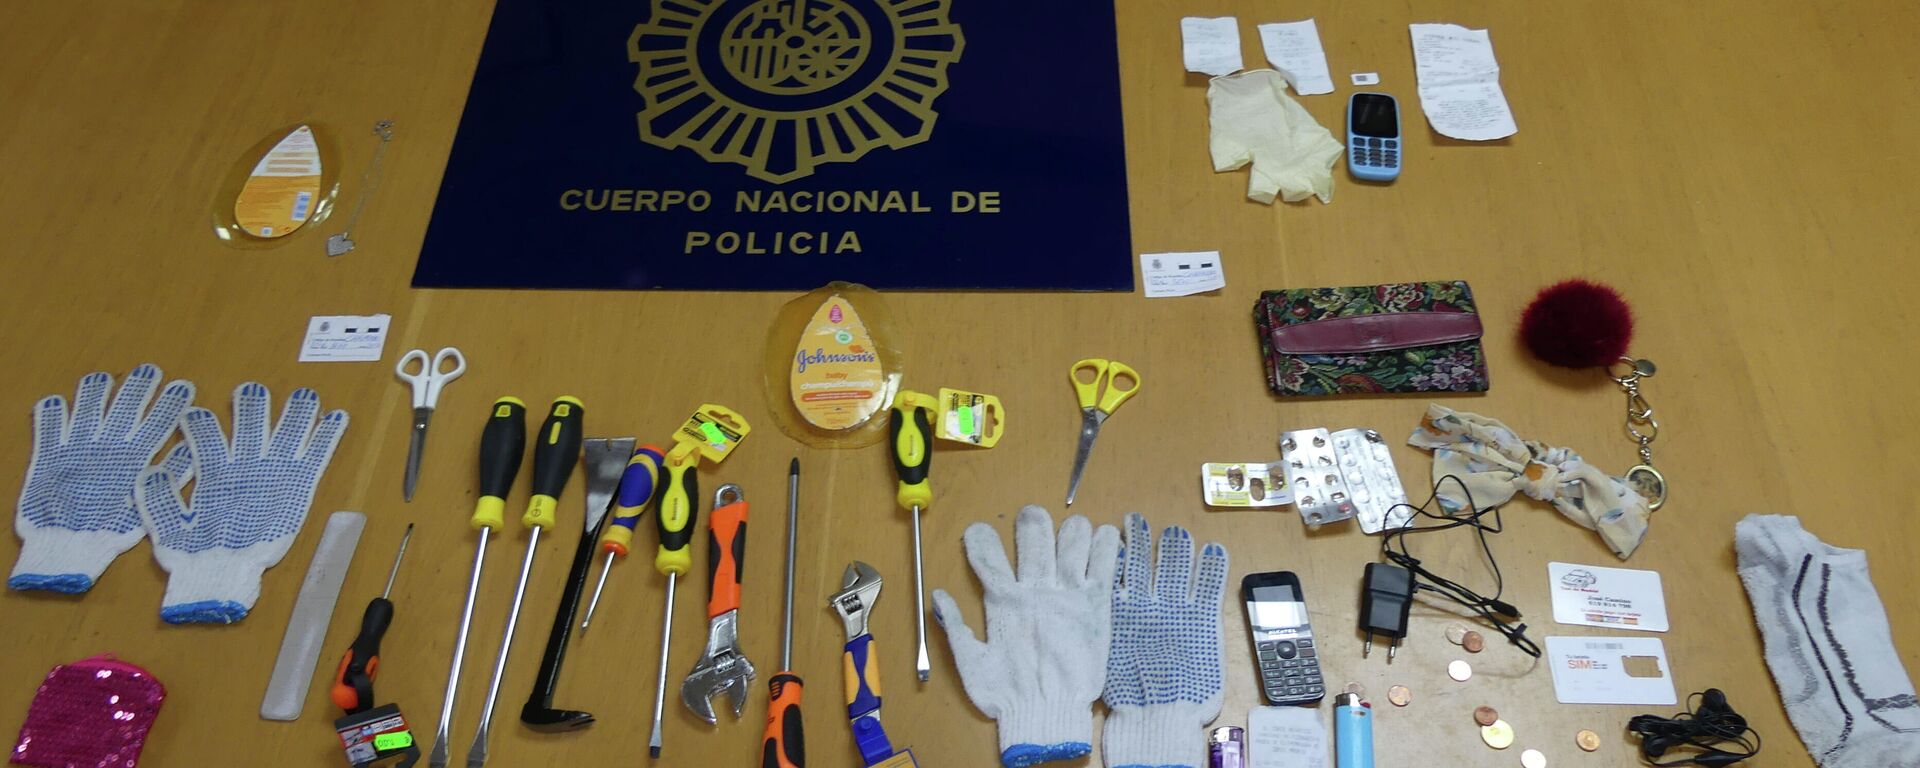 Herramientas utilizadas por la banda de las 'top model' para robar en Madrid - Sputnik Mundo, 1920, 16.04.2021